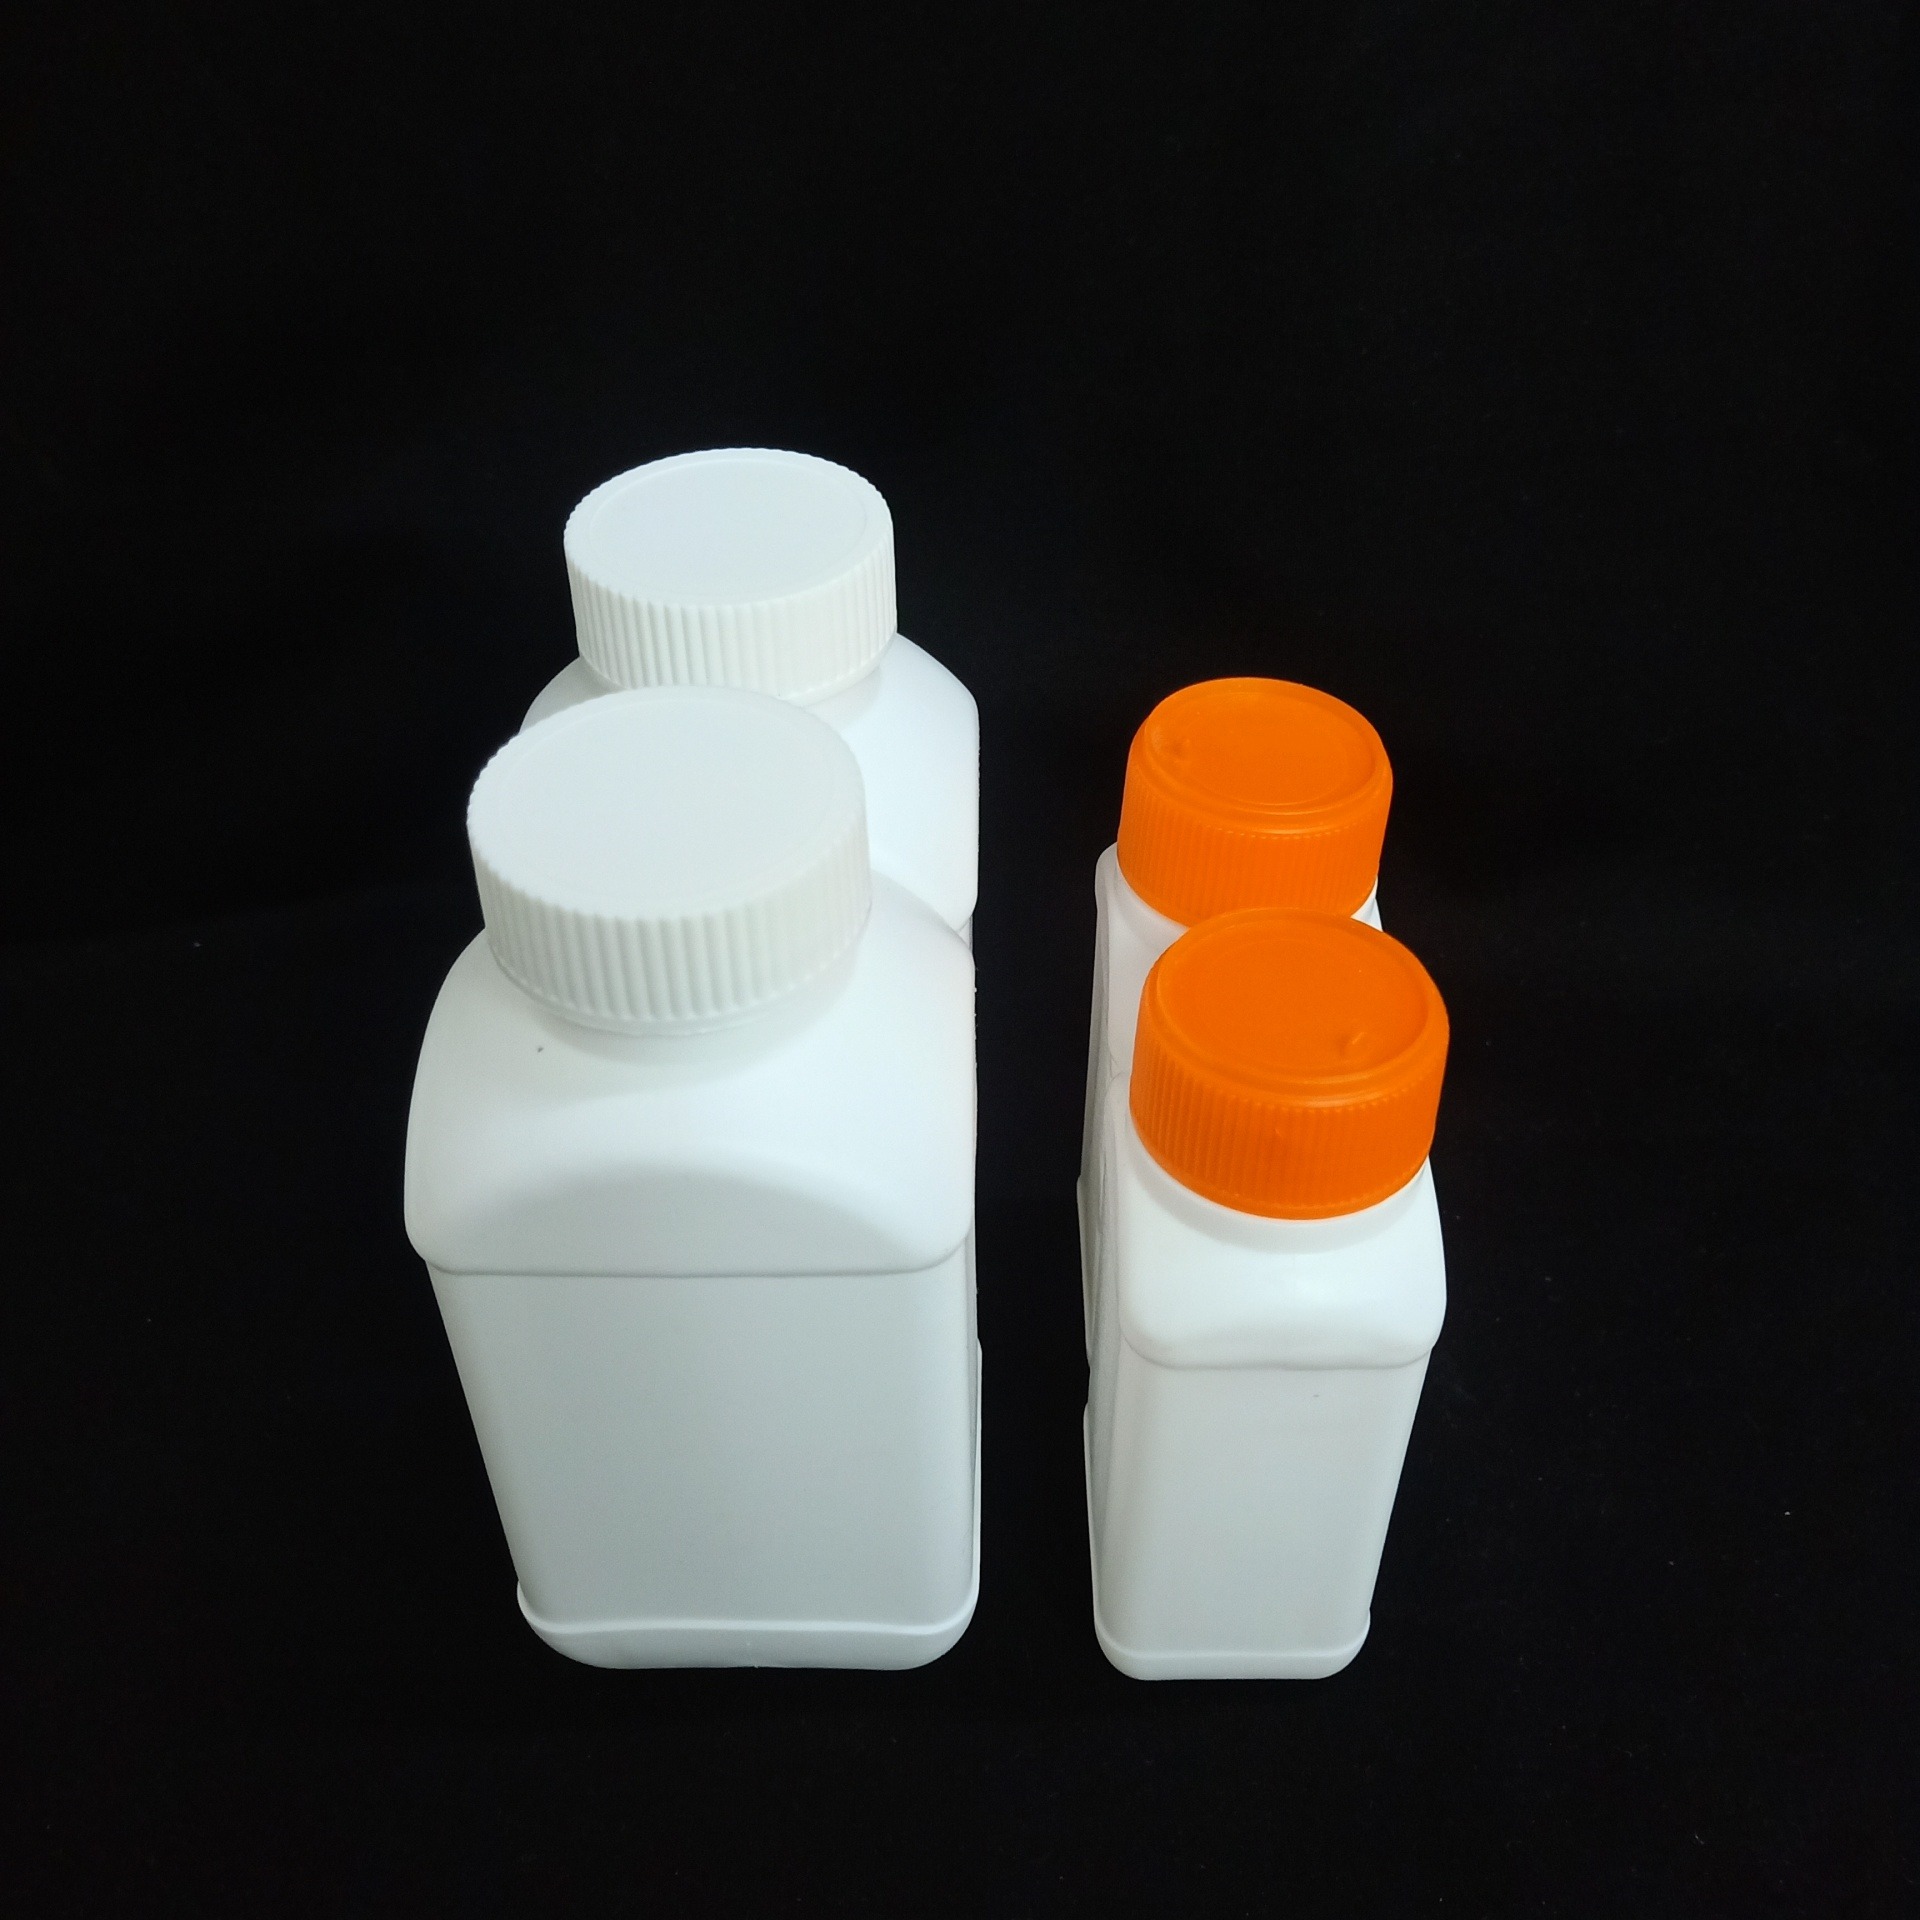 柏轩塑料  子母农药瓶 双口农药瓶 大量供应  价格优惠